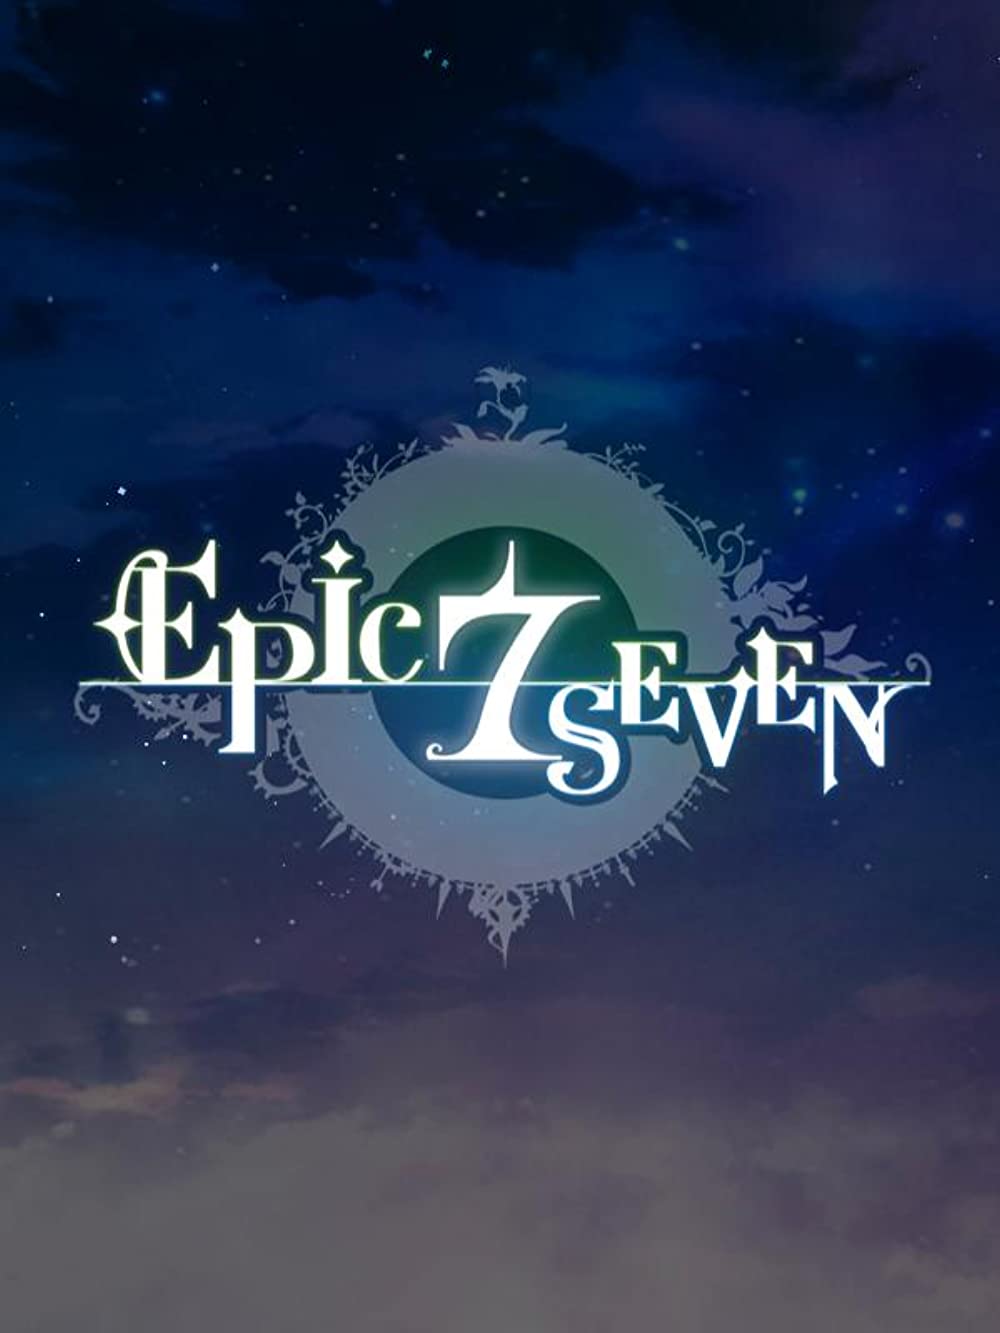 Epic Seven